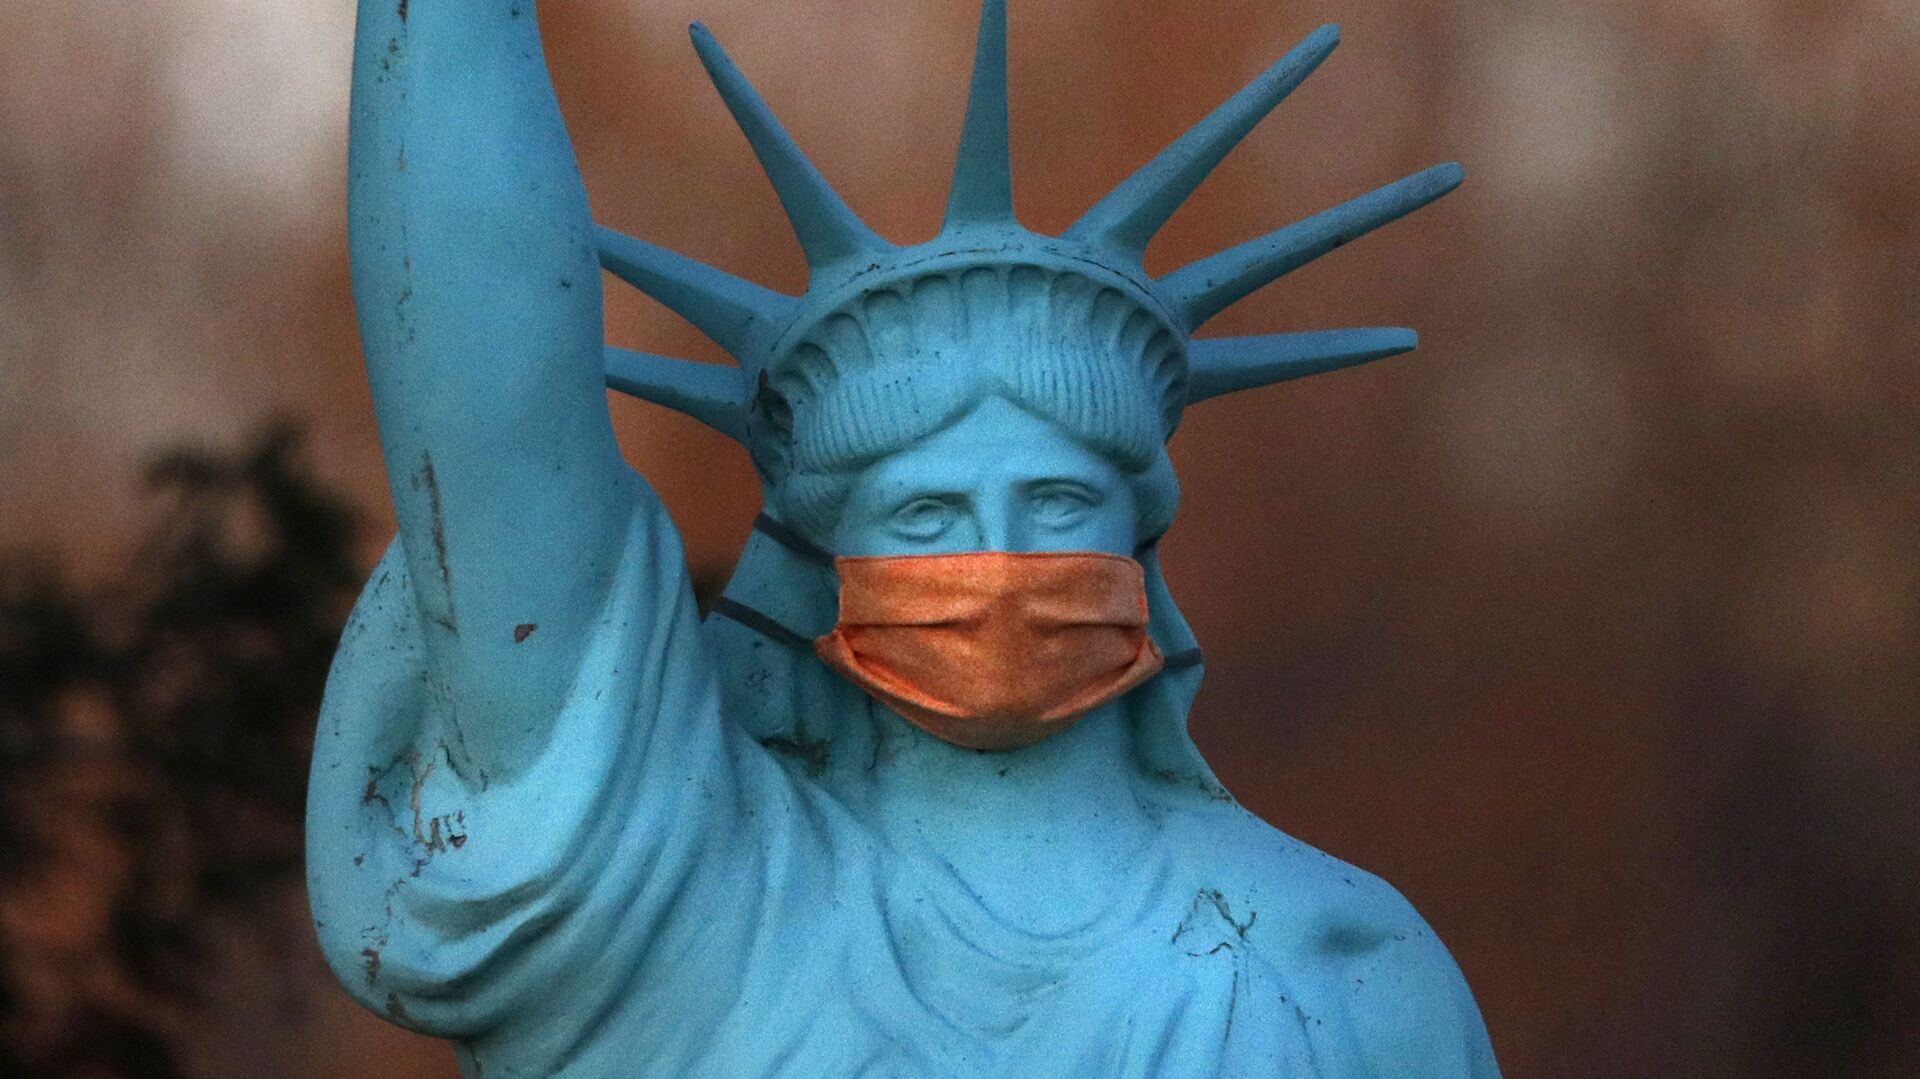 Реплика Статуи Свободы в защитной маске в штате Мэн, США - Sputnik Молдова, 1920, 17.10.2021